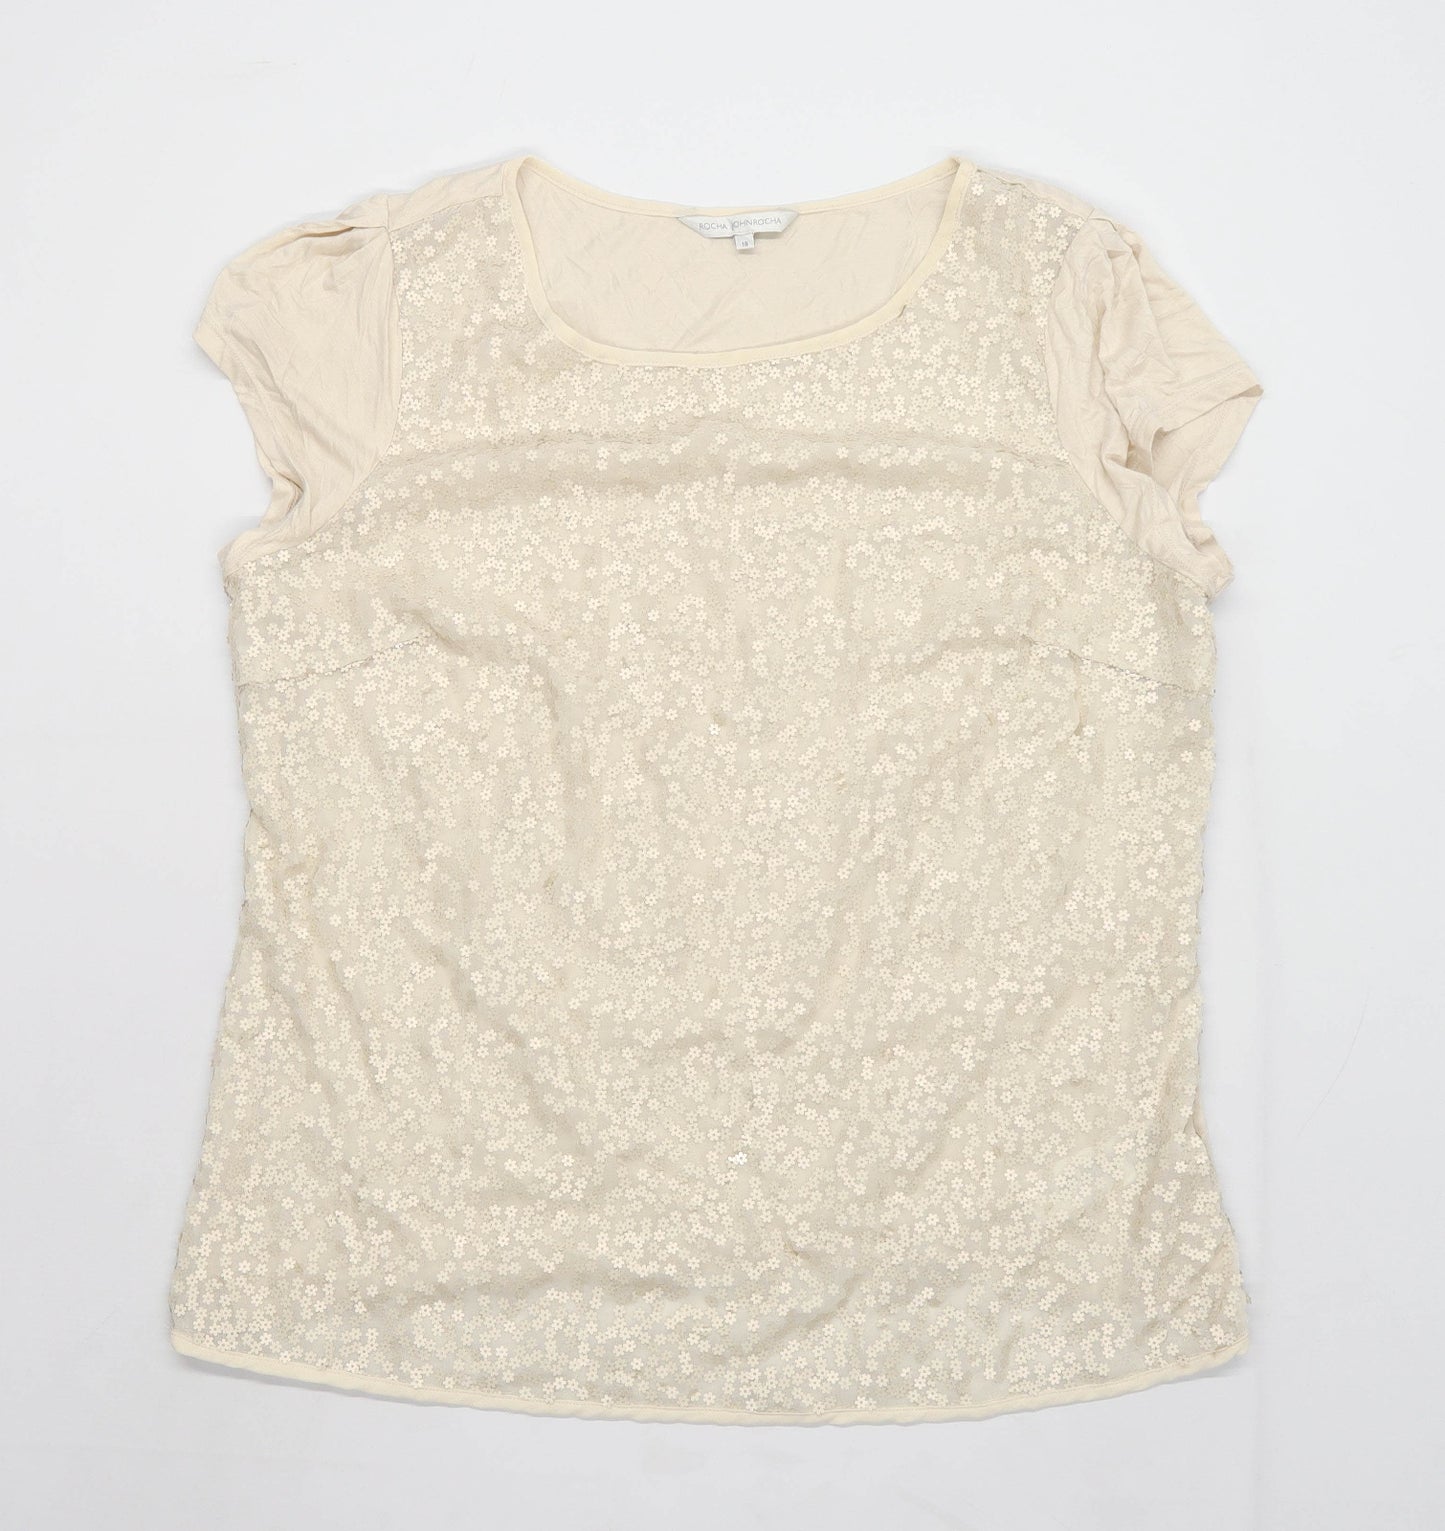 Rocha John Rocha Womens Size 18 Floral Beige Sequined T-Shirt (Regular)